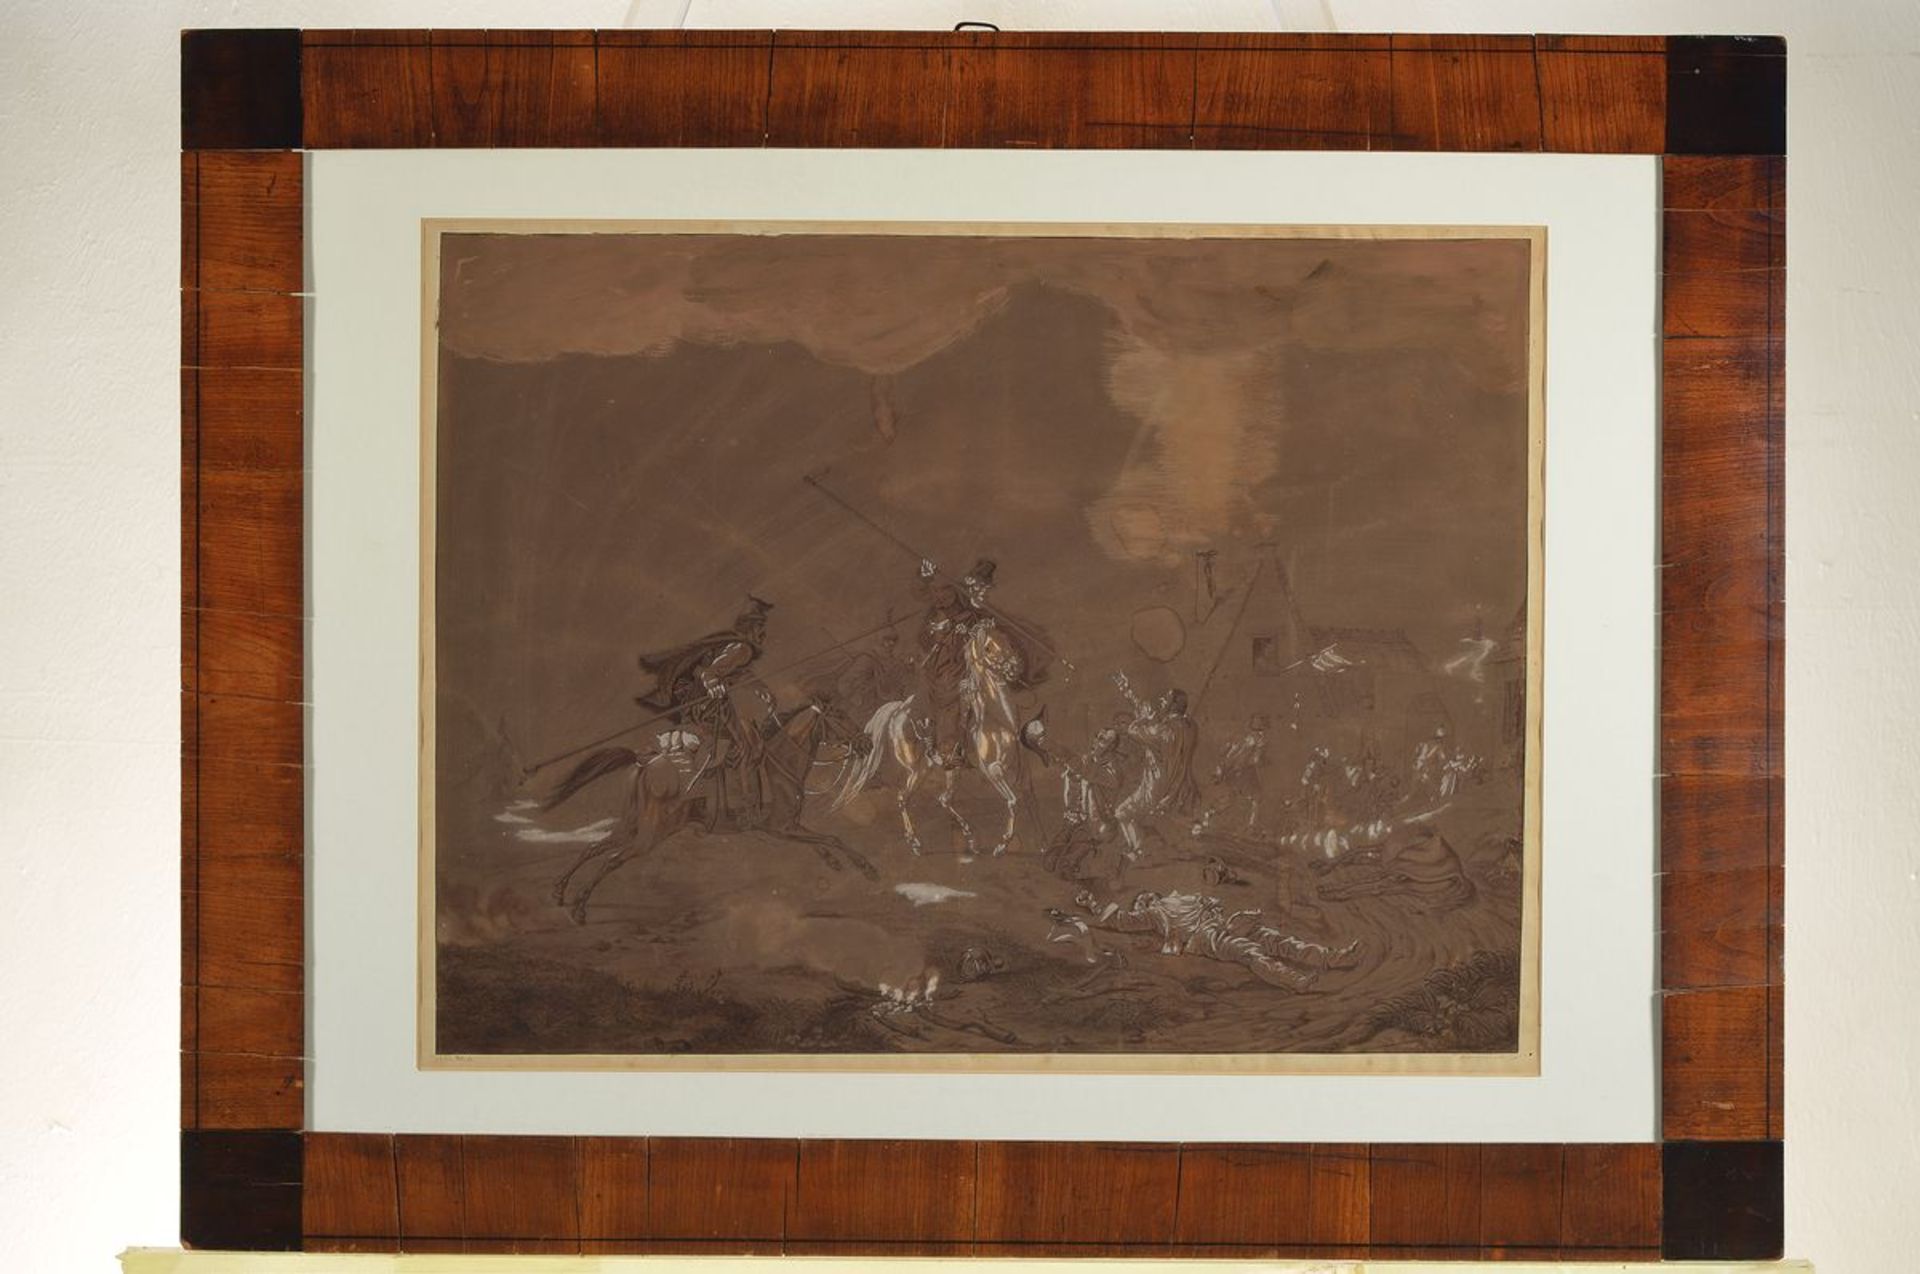 Unbekannter Künstler des 18. Jh., Schlachtenszene, feine Tuschzeichnung auf dunklem Hintergrund, - Bild 2 aus 2